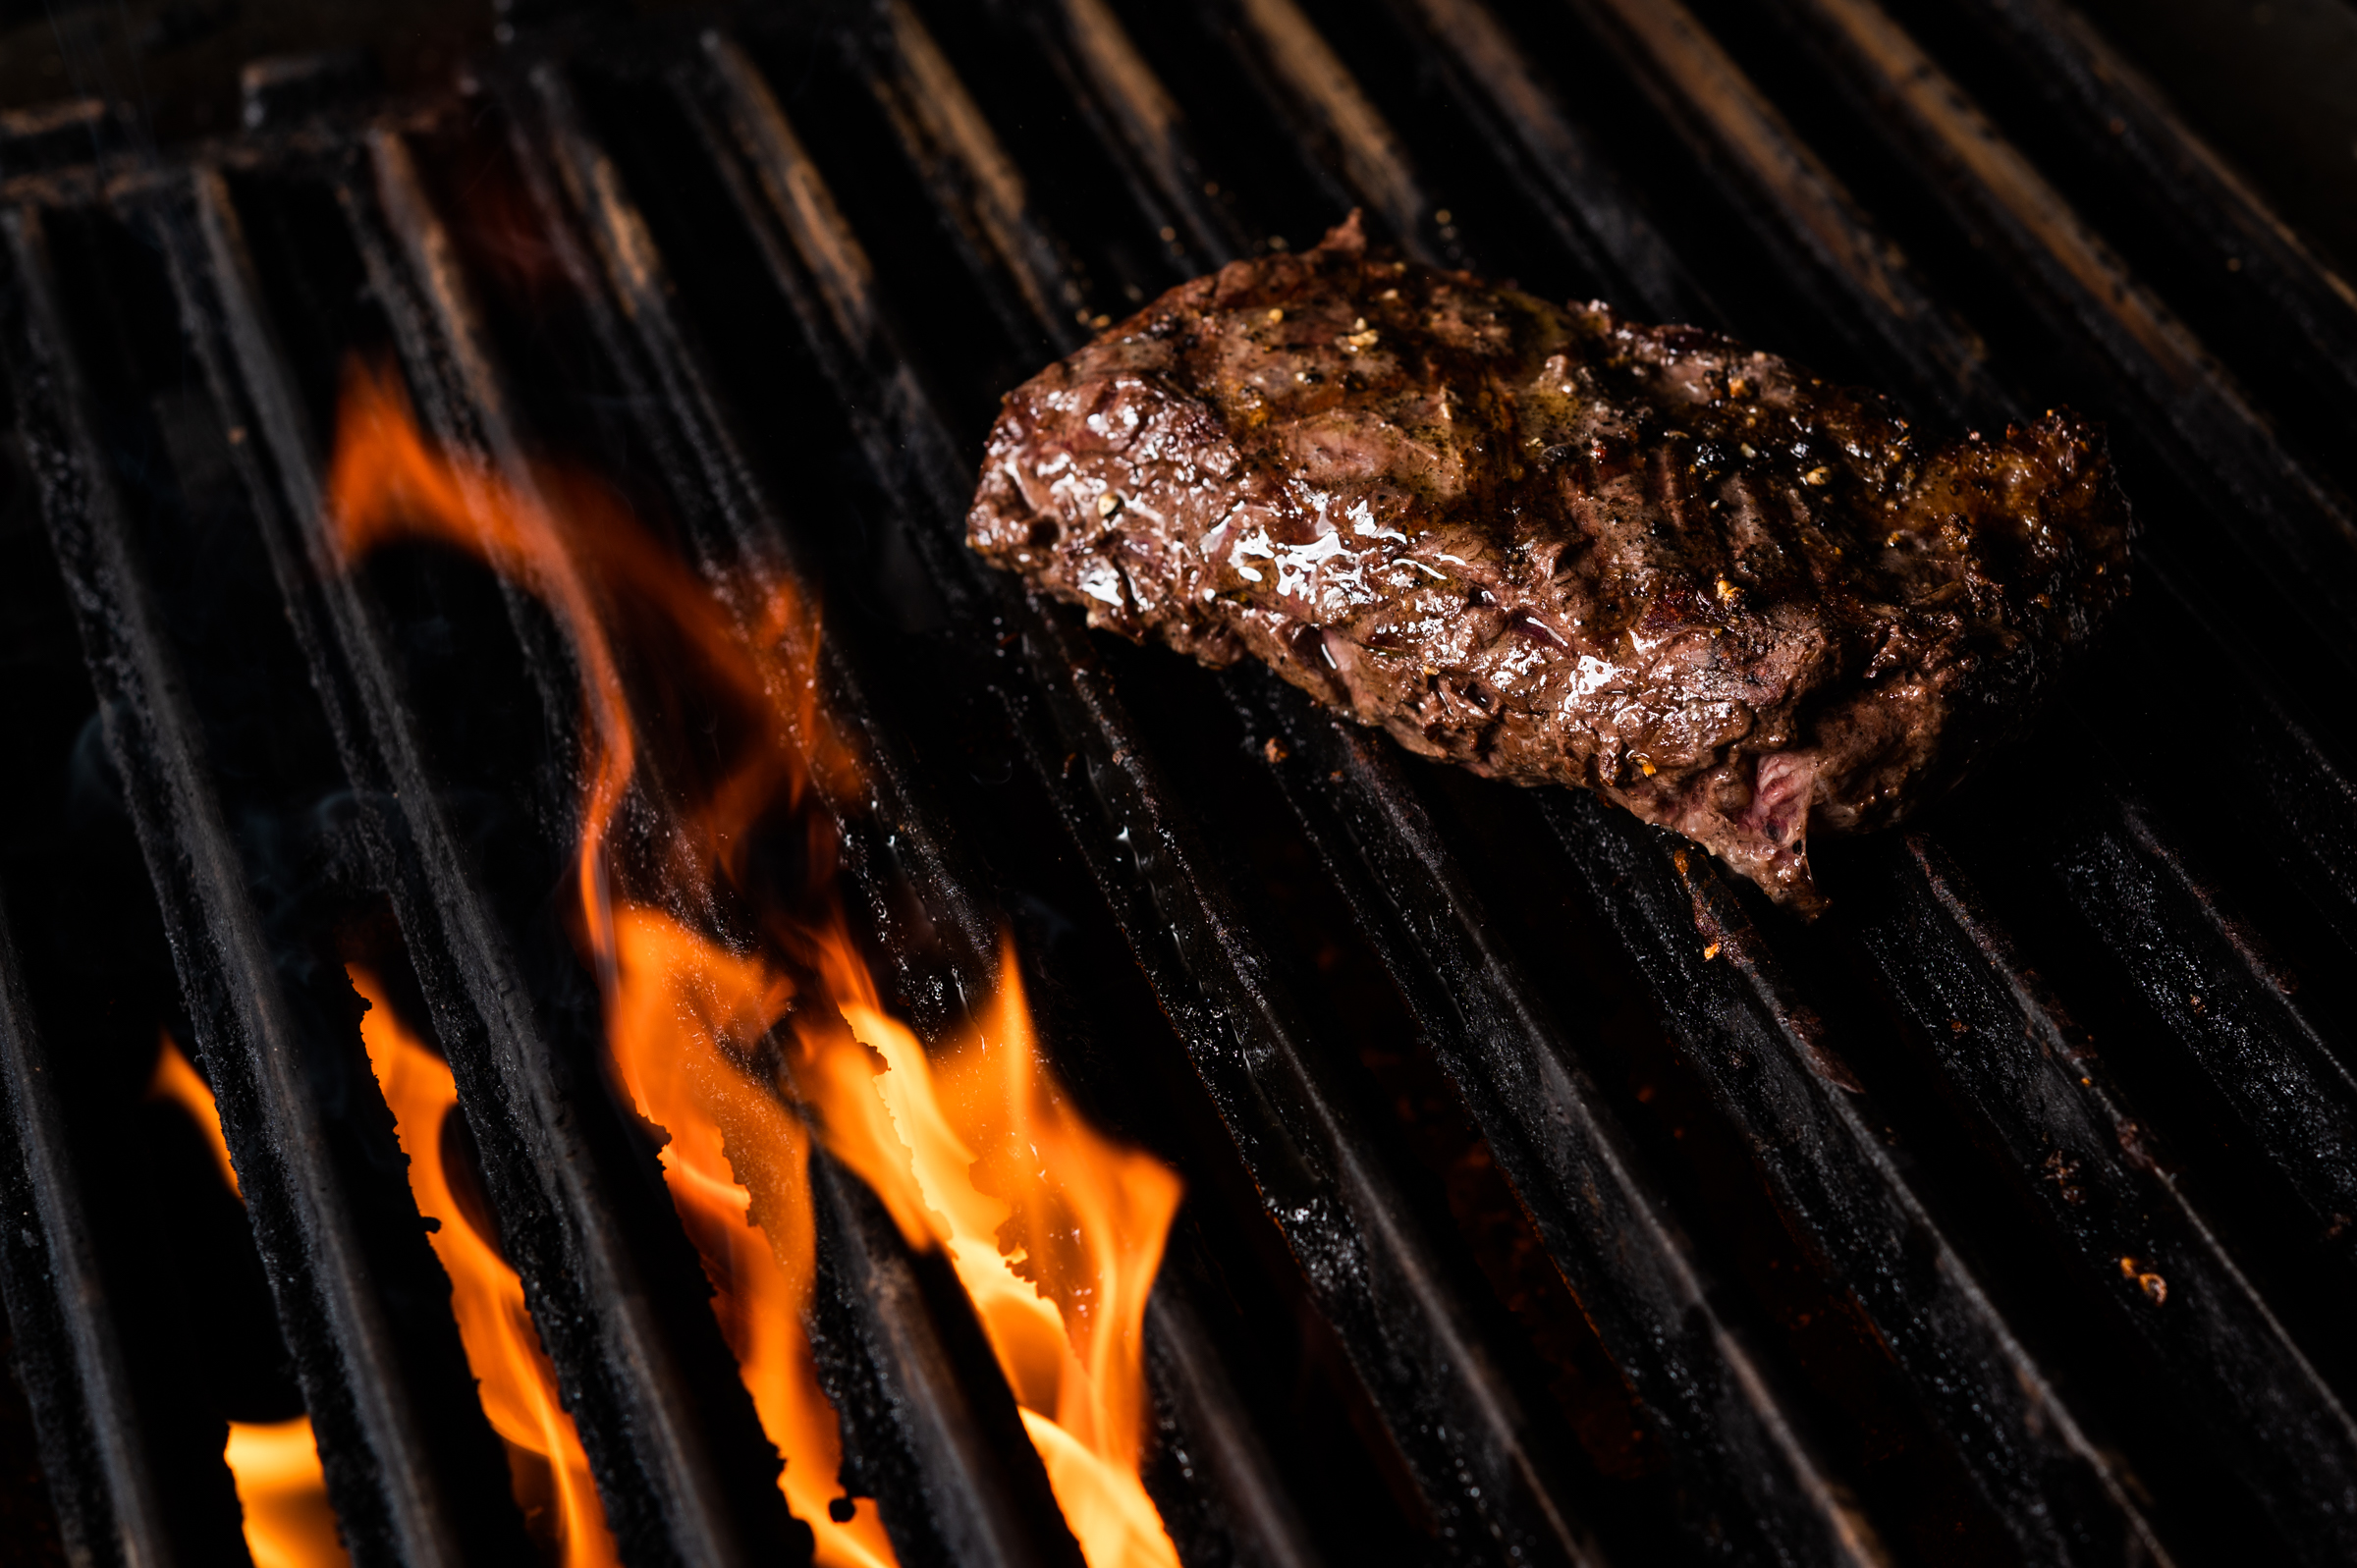 Hanger steak on the grill